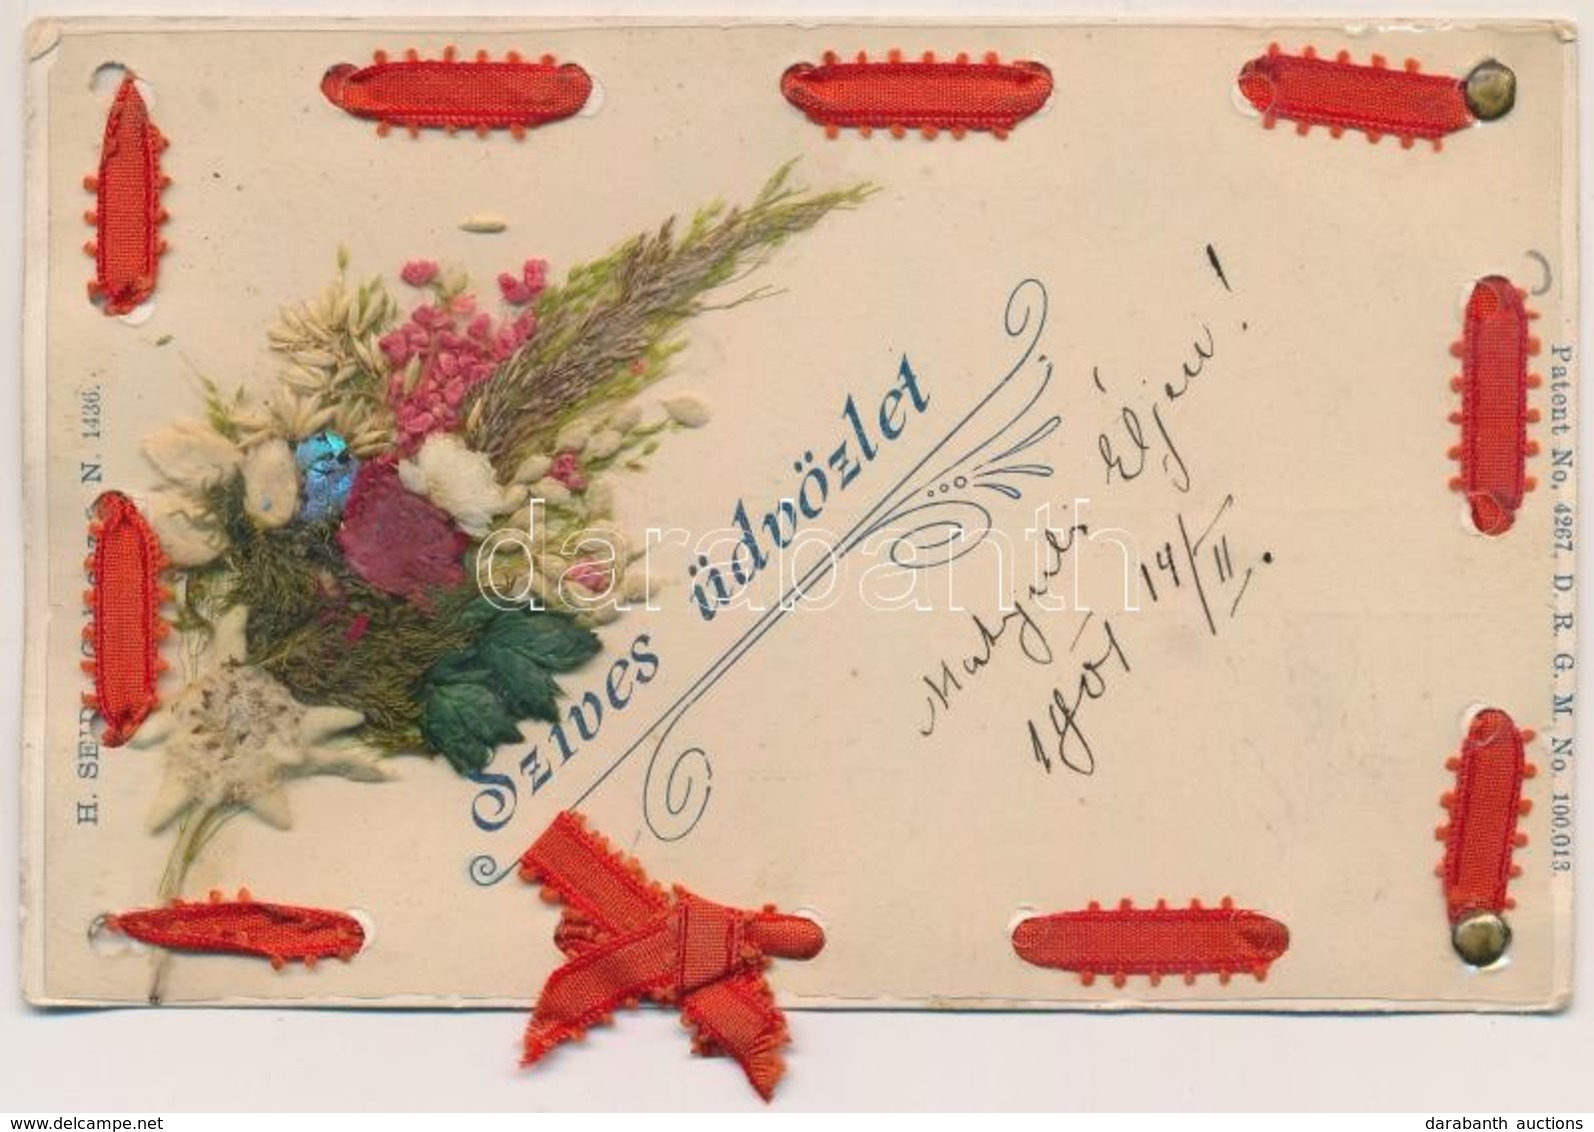 T2/T3 Szíves üdvözlet. Élővirágos üdvözlőlap / Greeting Card With Real Flower. H. Seidl, Gablonz Patent No. 4267. DRGM N - Non Classés